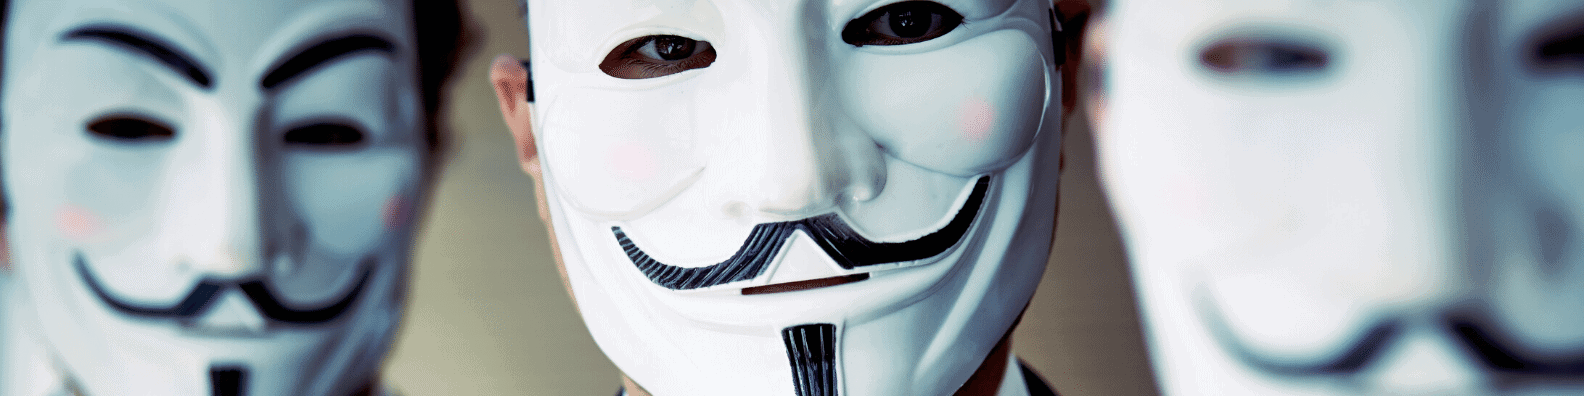 Personnes masquées pour faire le lien avec les abonnés de la page entreprise LinkedIn